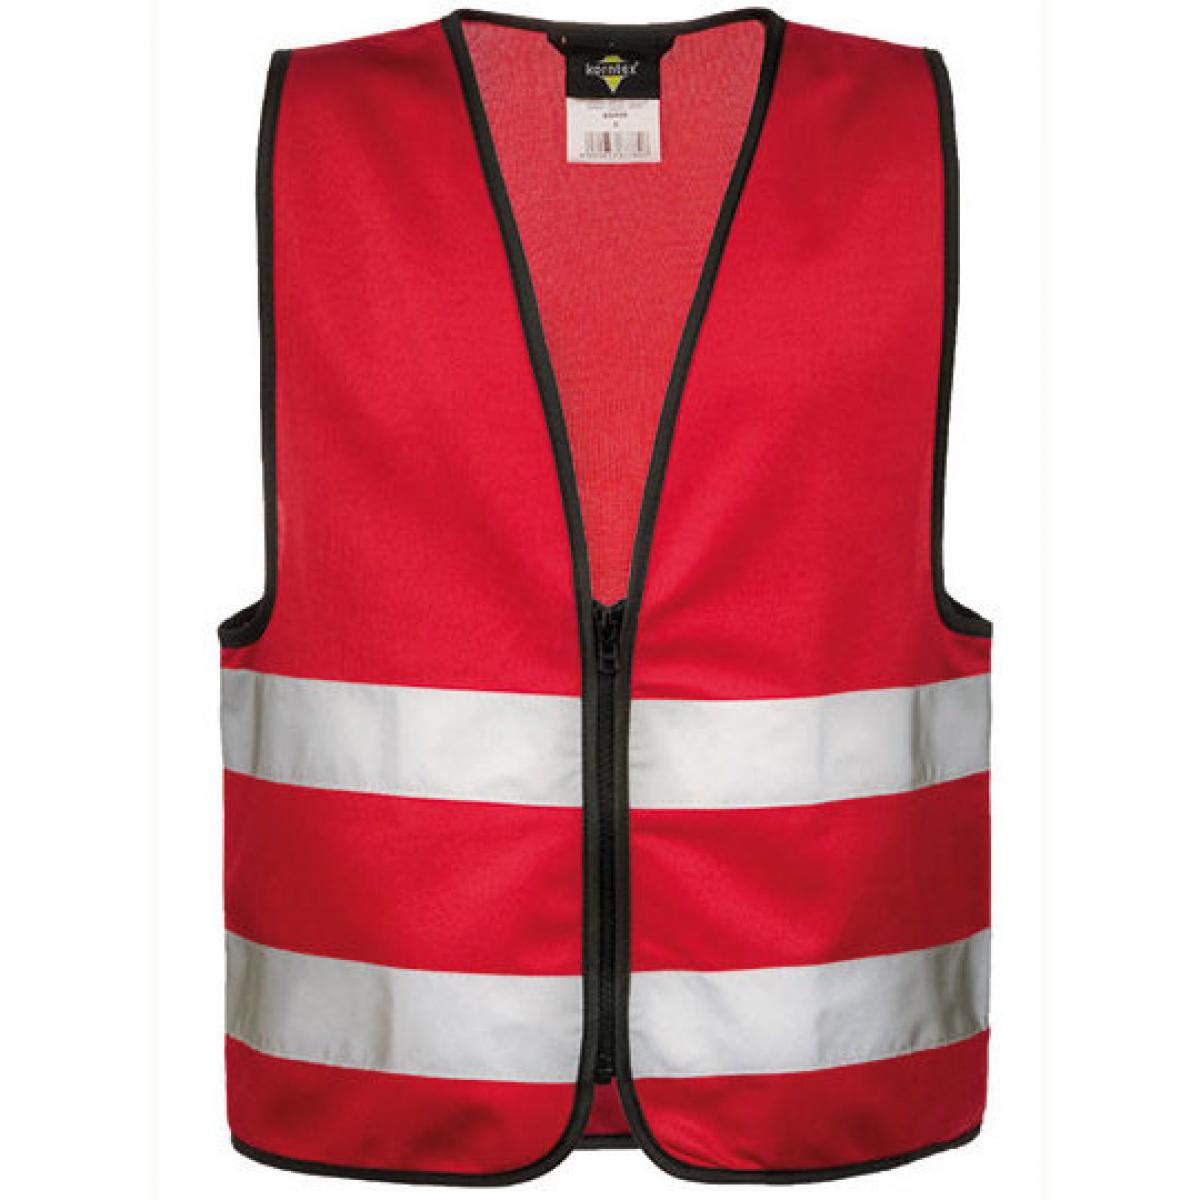 Hersteller: Korntex Herstellernummer: KWRX Artikelbezeichnung: Kinder Safety Vest for Kids with Zipper EN1150 Farbe: Red